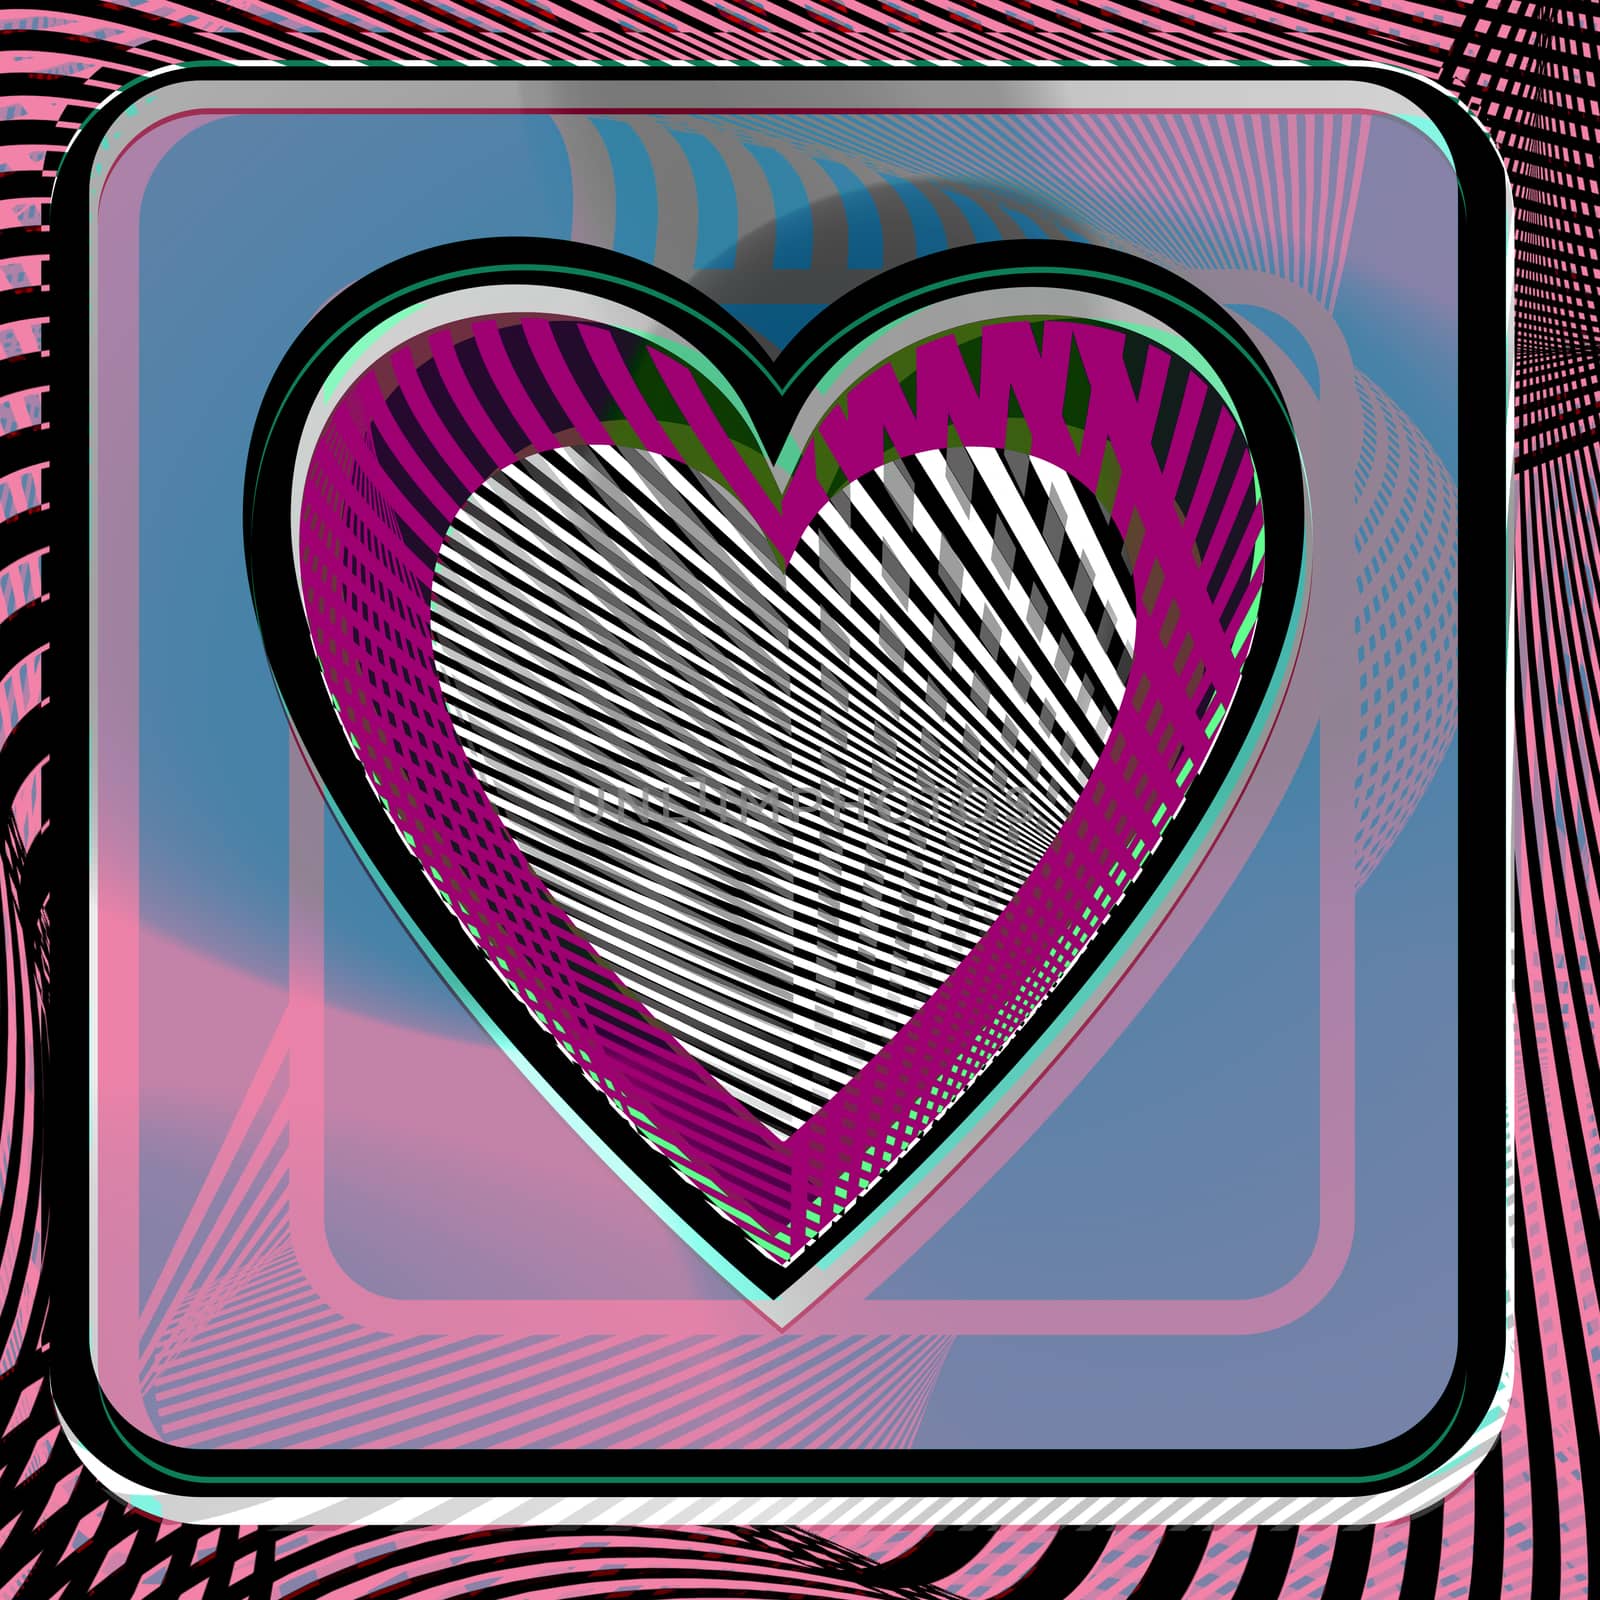 Heart illustration by aroas